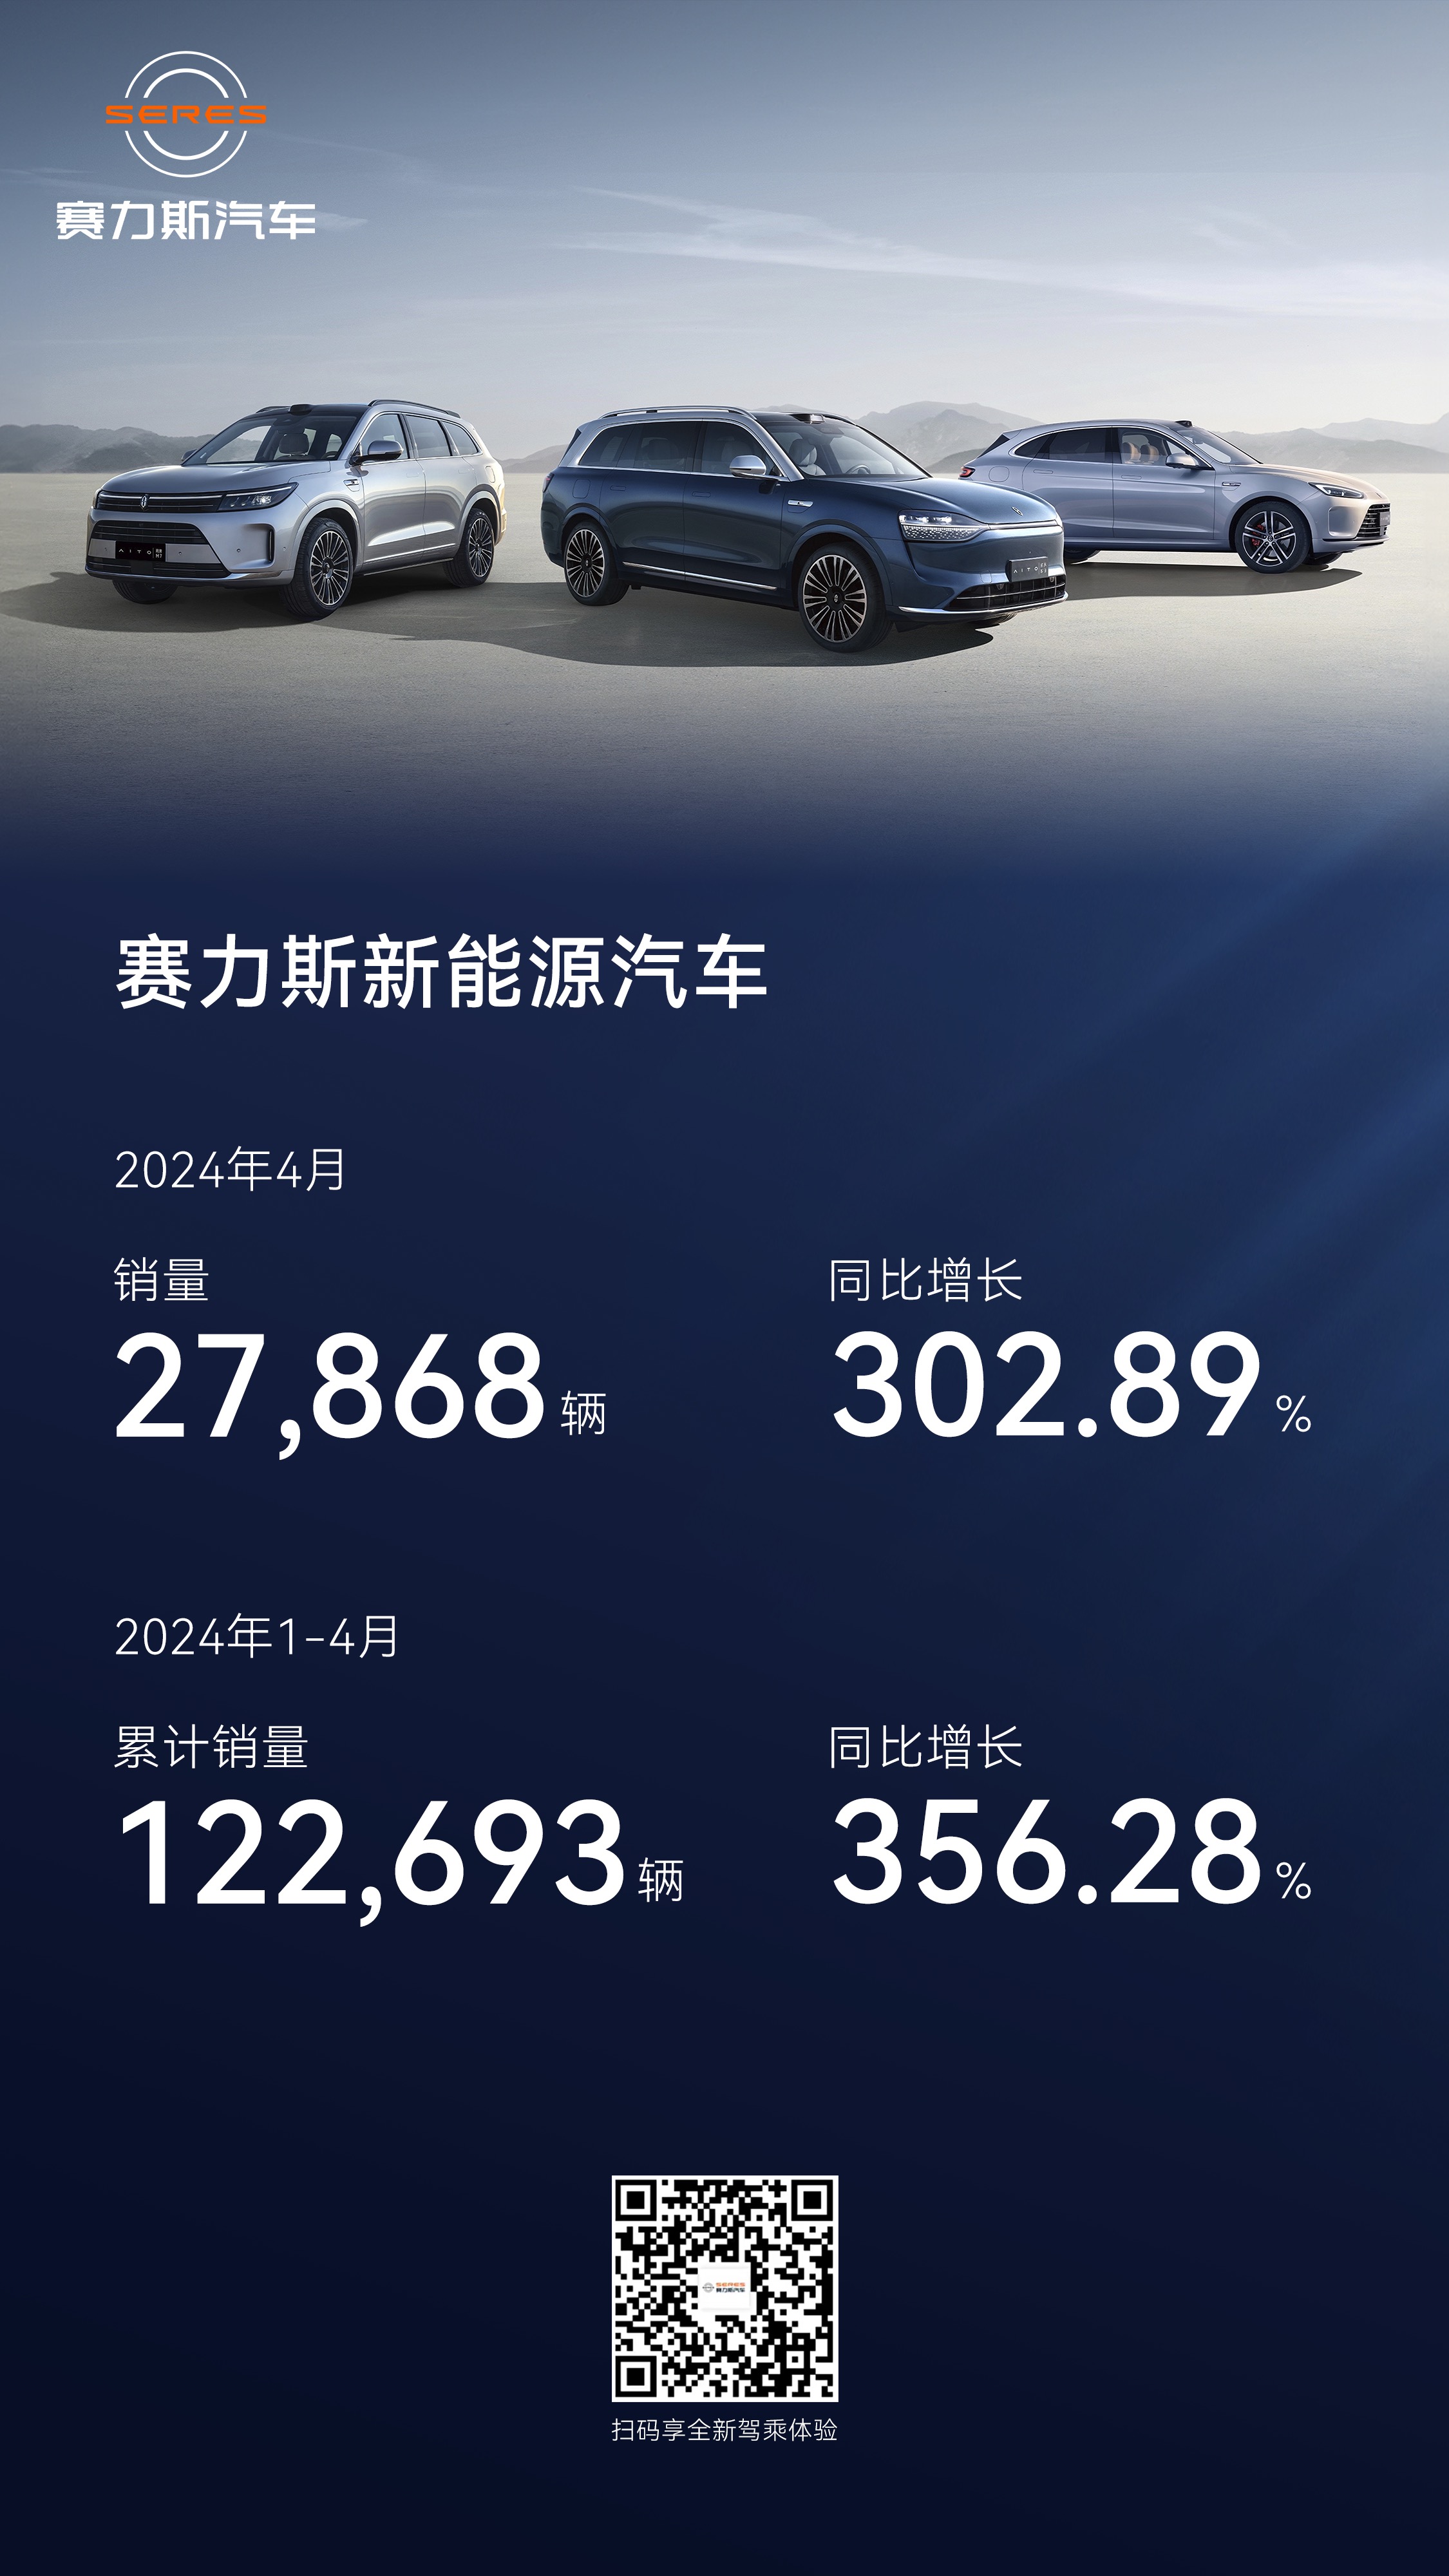 赛力斯4月新能源汽车销量达27868辆 同比增长302%